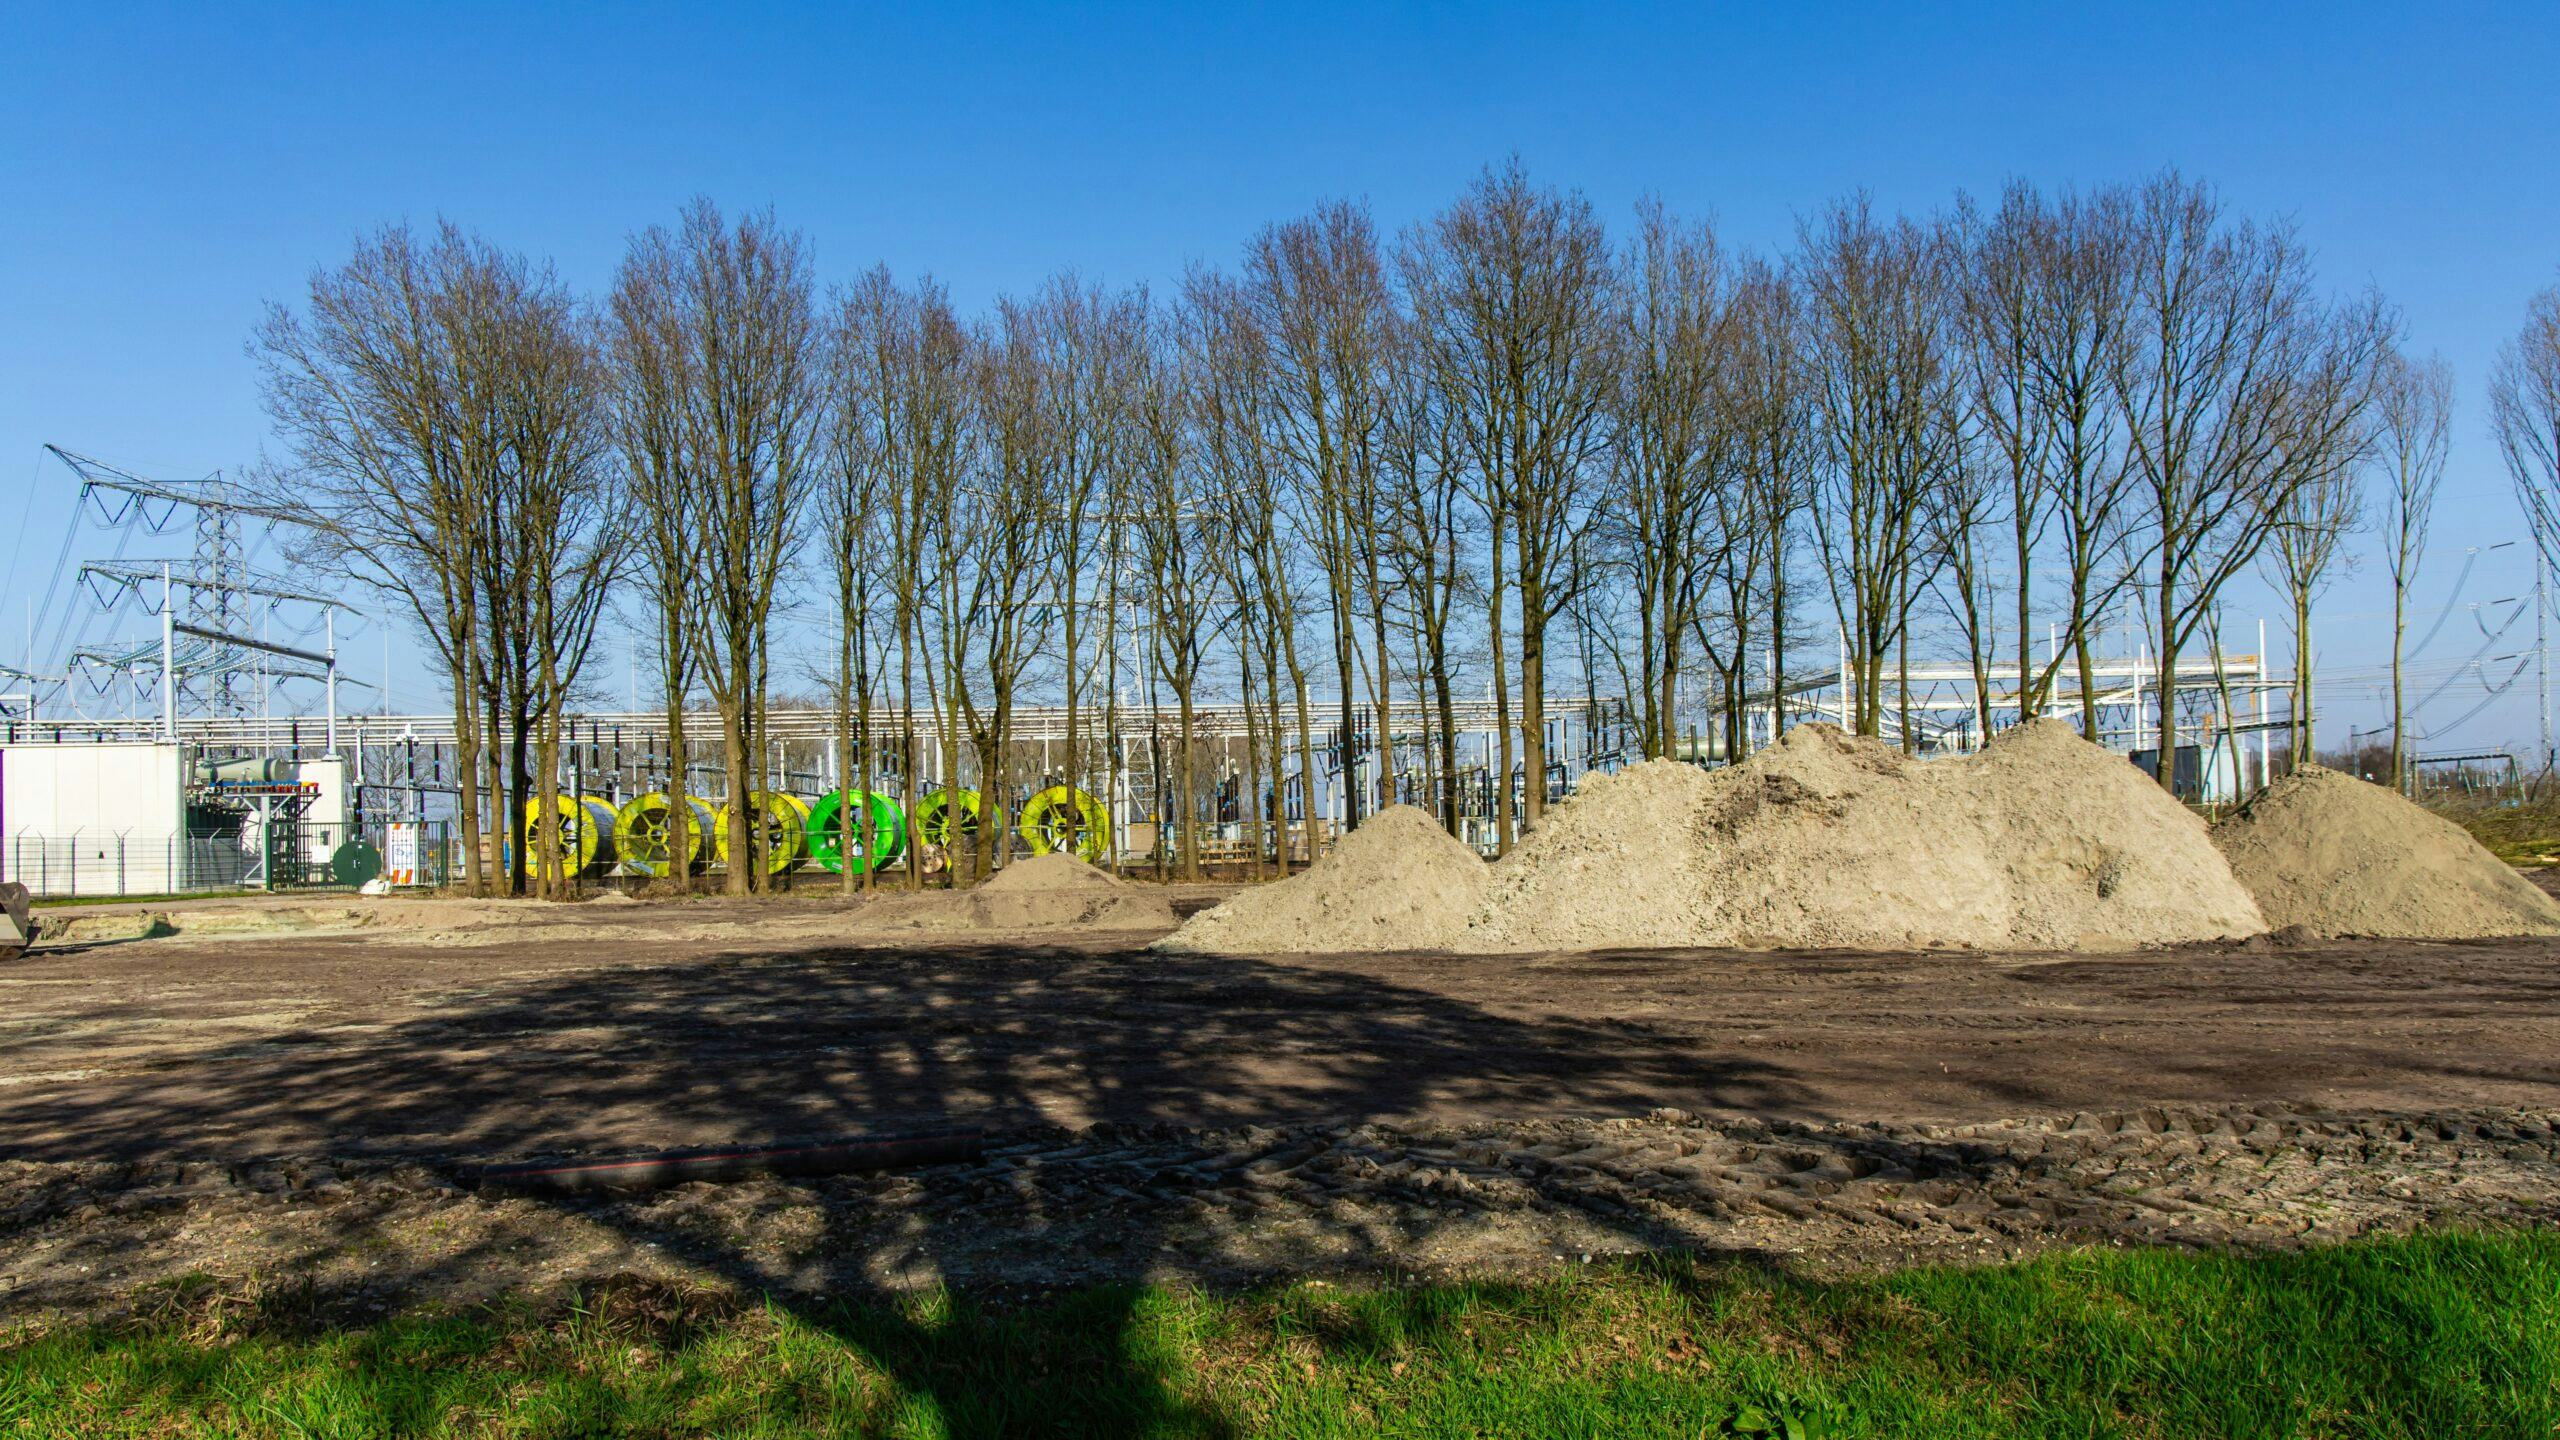 Hoogspanningsstation Meeden in Groningen wordt de komende jaren uitgebreid. Foto: ANP/HH/Sandra Uittenbogaart